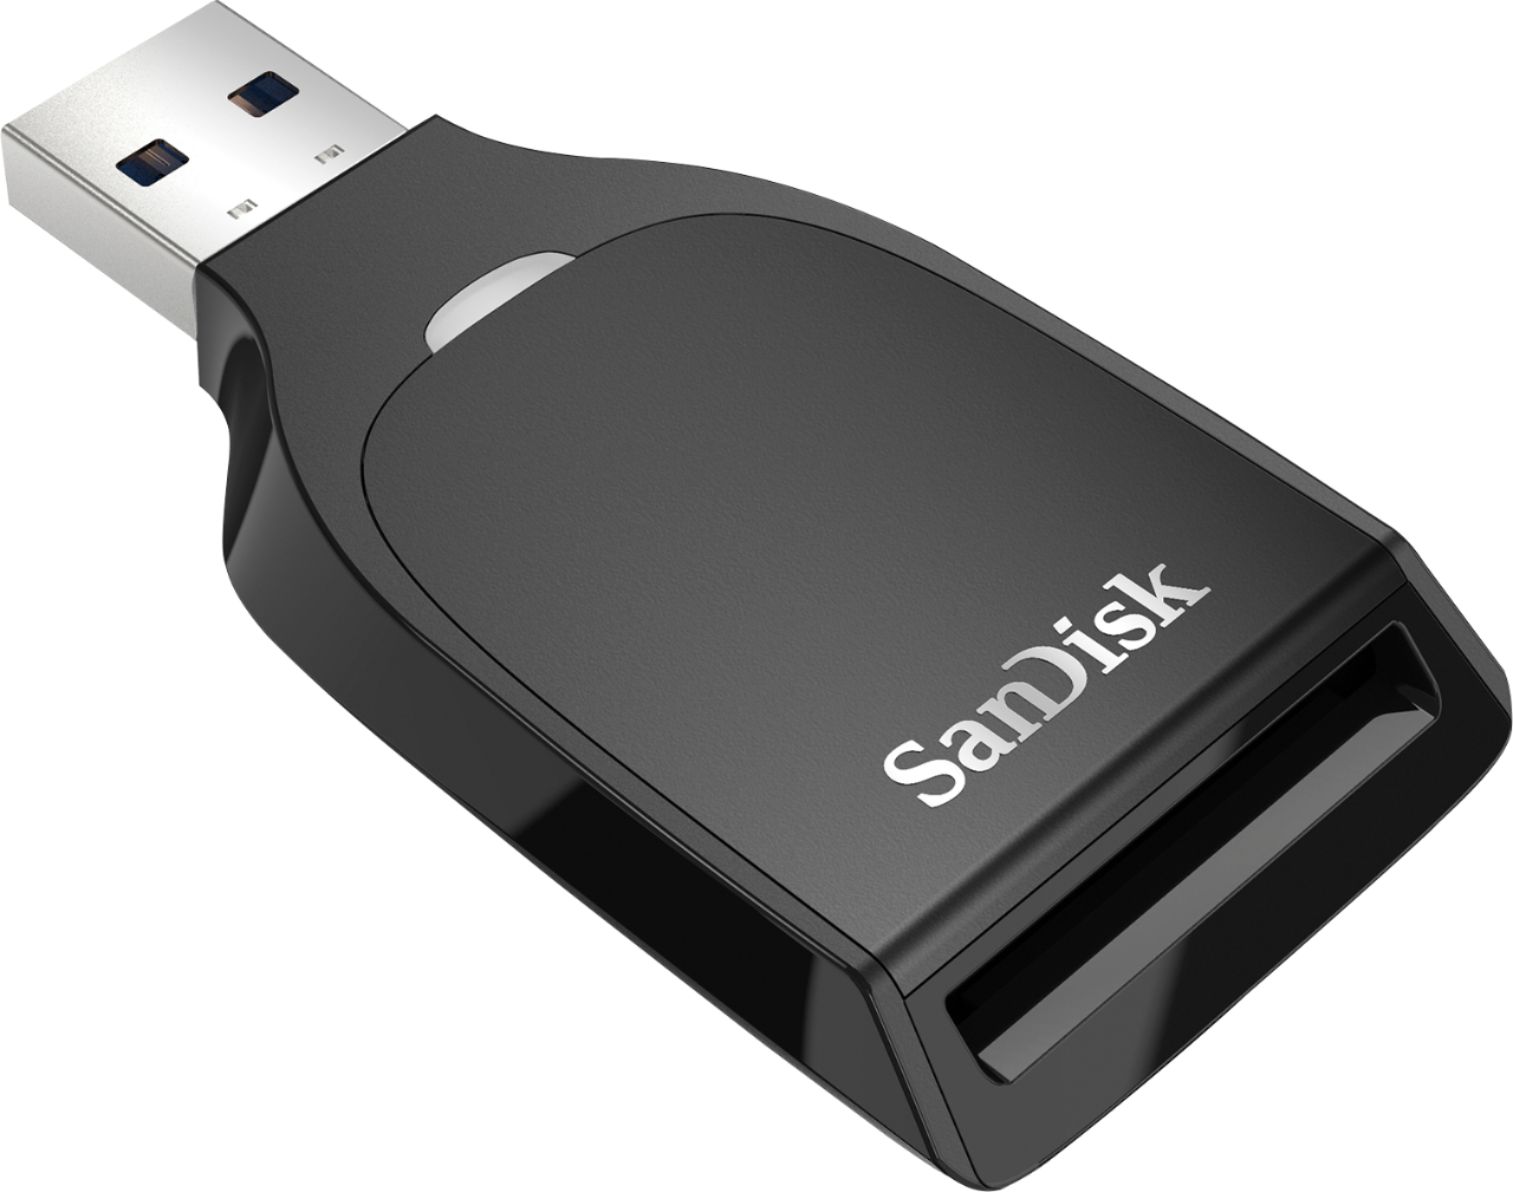 SanDisk USB 3.0 SD UHS-I Card Reader SDDR-C531-ANANN - Best Buy